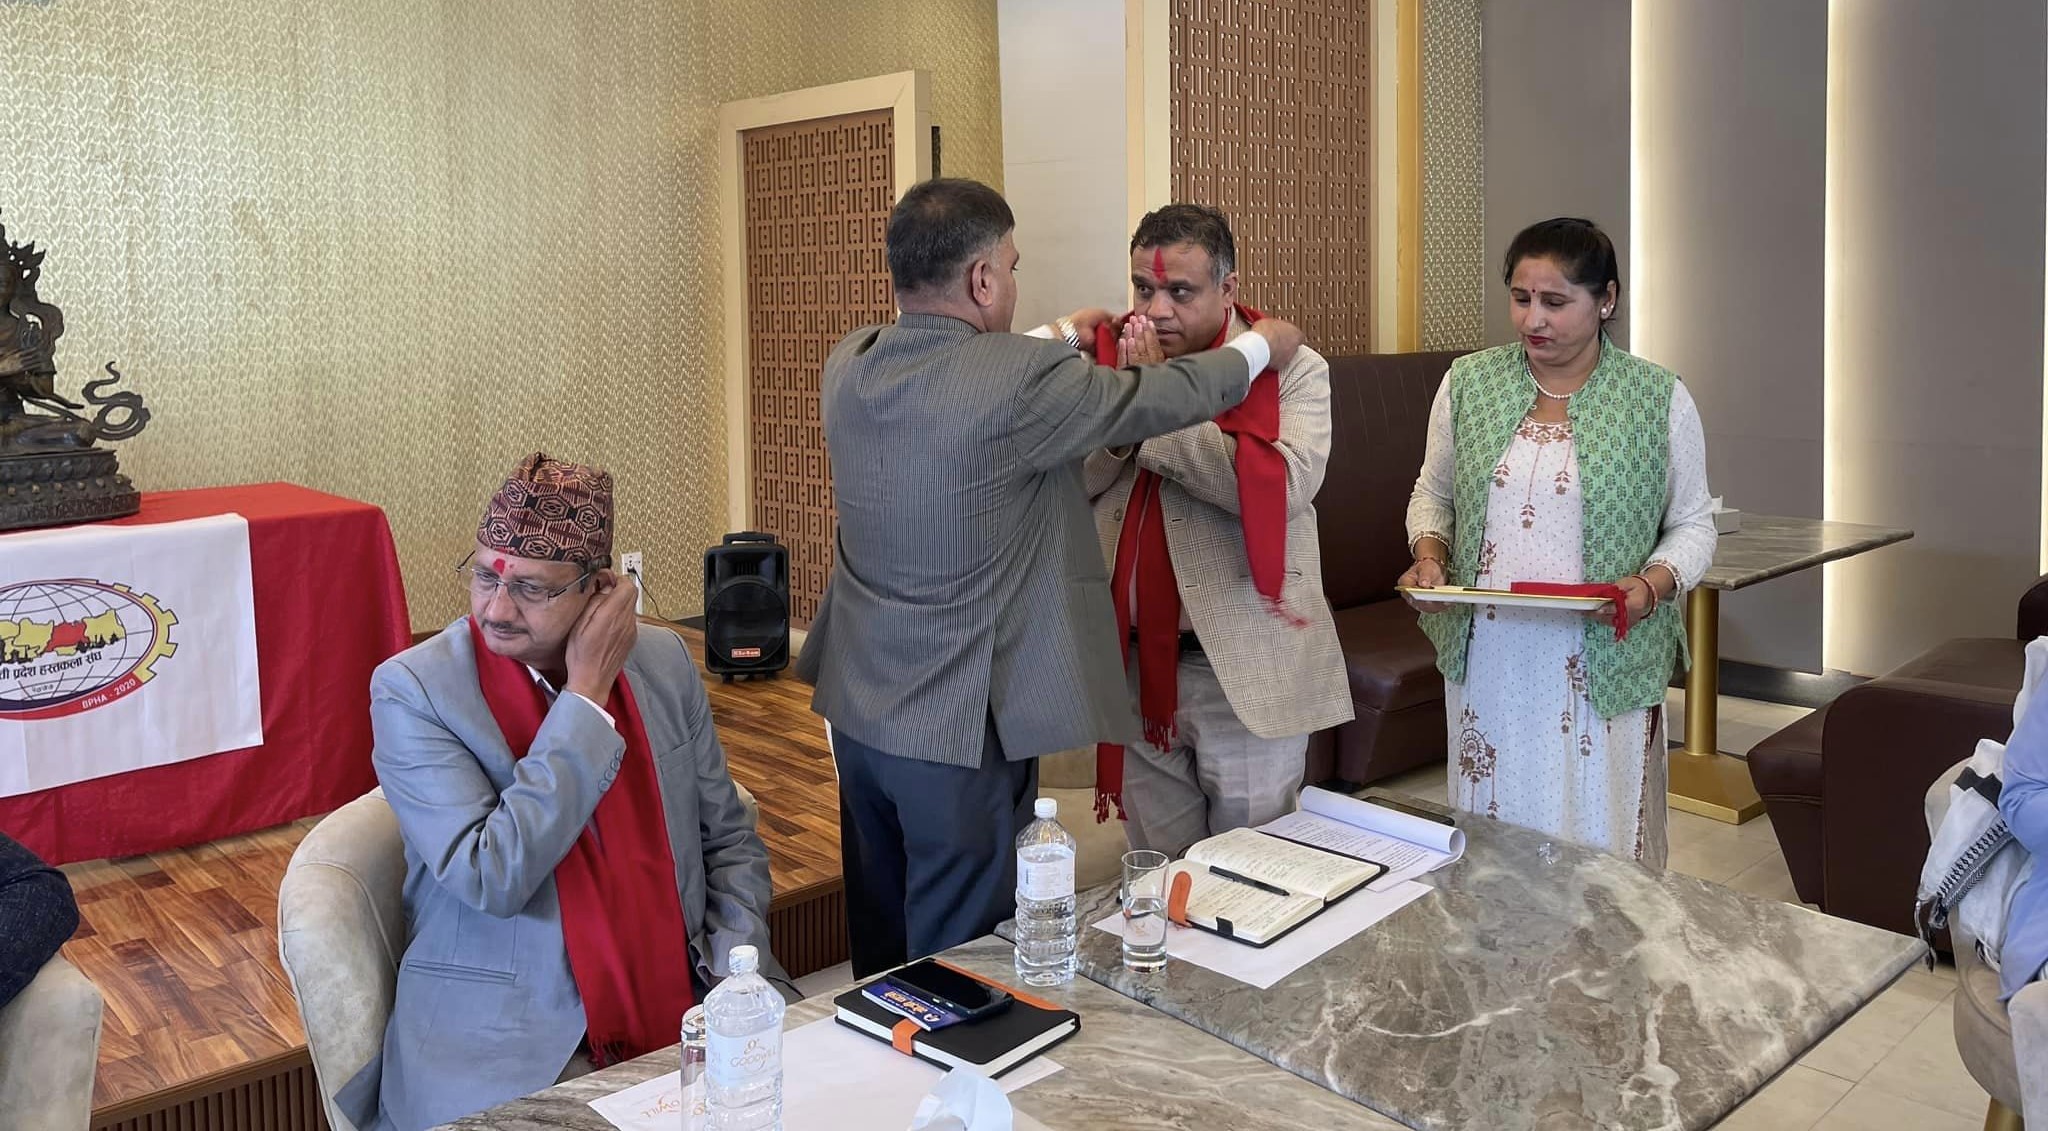 नेपाल हस्तकला महासंघद्वारा बागमतीका नव नियुक्त मन्त्रीहरूलाई स्वागत तथा बधाई